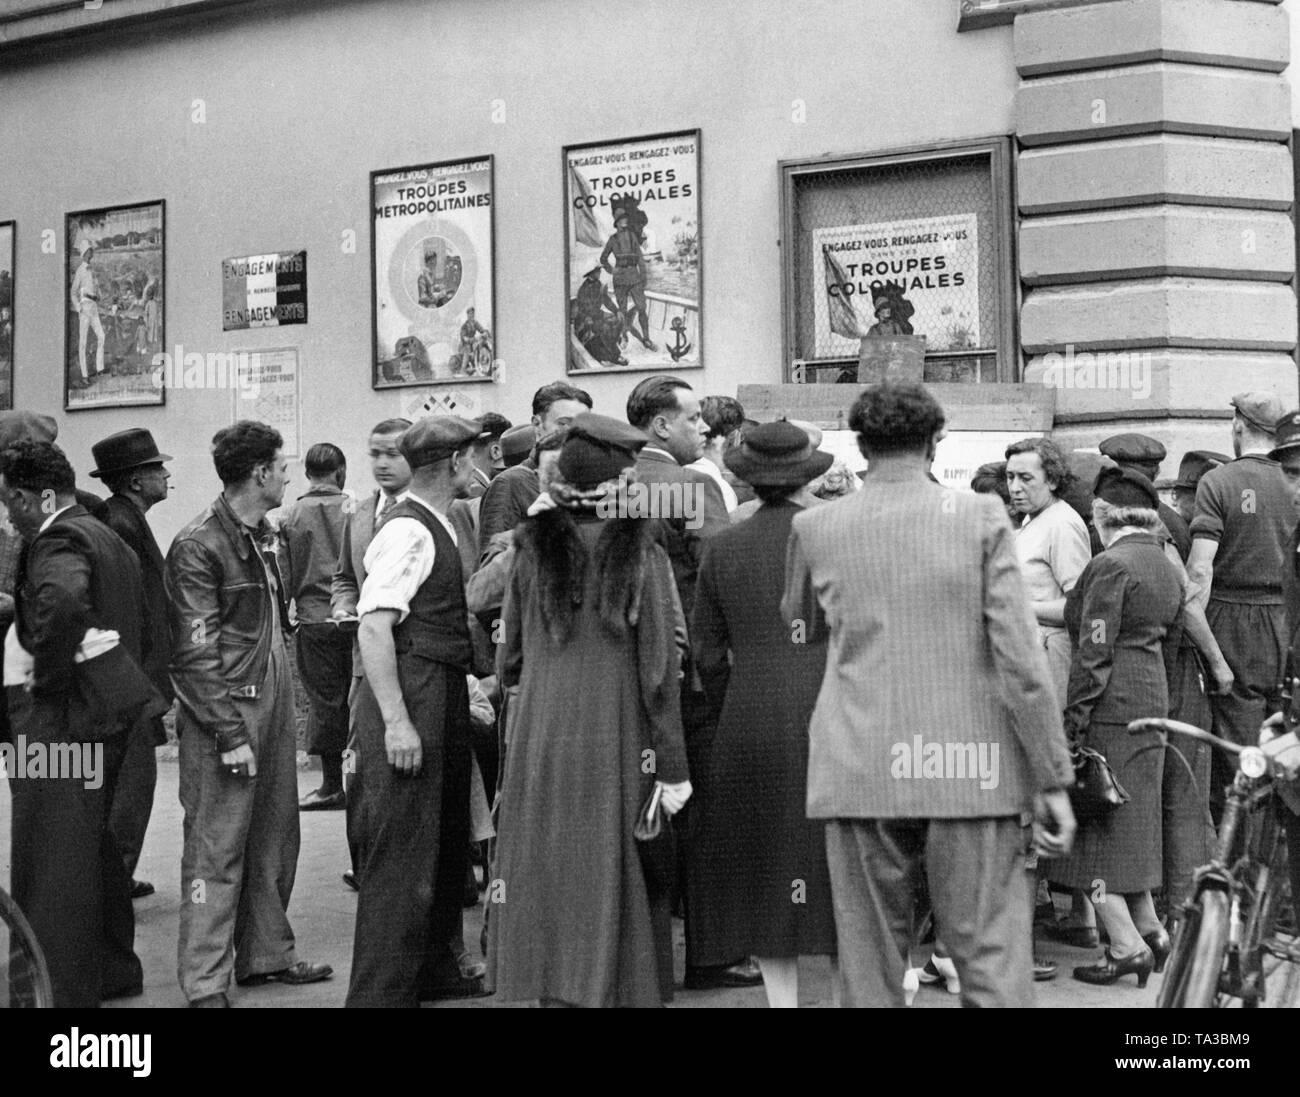 Männer und Frauen stehen vor Plakaten ruft zur Mobilisierung in Paris. Im Laufe des Sudetenlandes Krise, die teilweise Mobilisierung der französischen Streitkräfte auftritt. Adolf Hitler provoziert einen internationalen Konflikt mit Sudetenland Krise, um das Sudetenland an das Deutsche Reich zu Anhang. Stockfoto